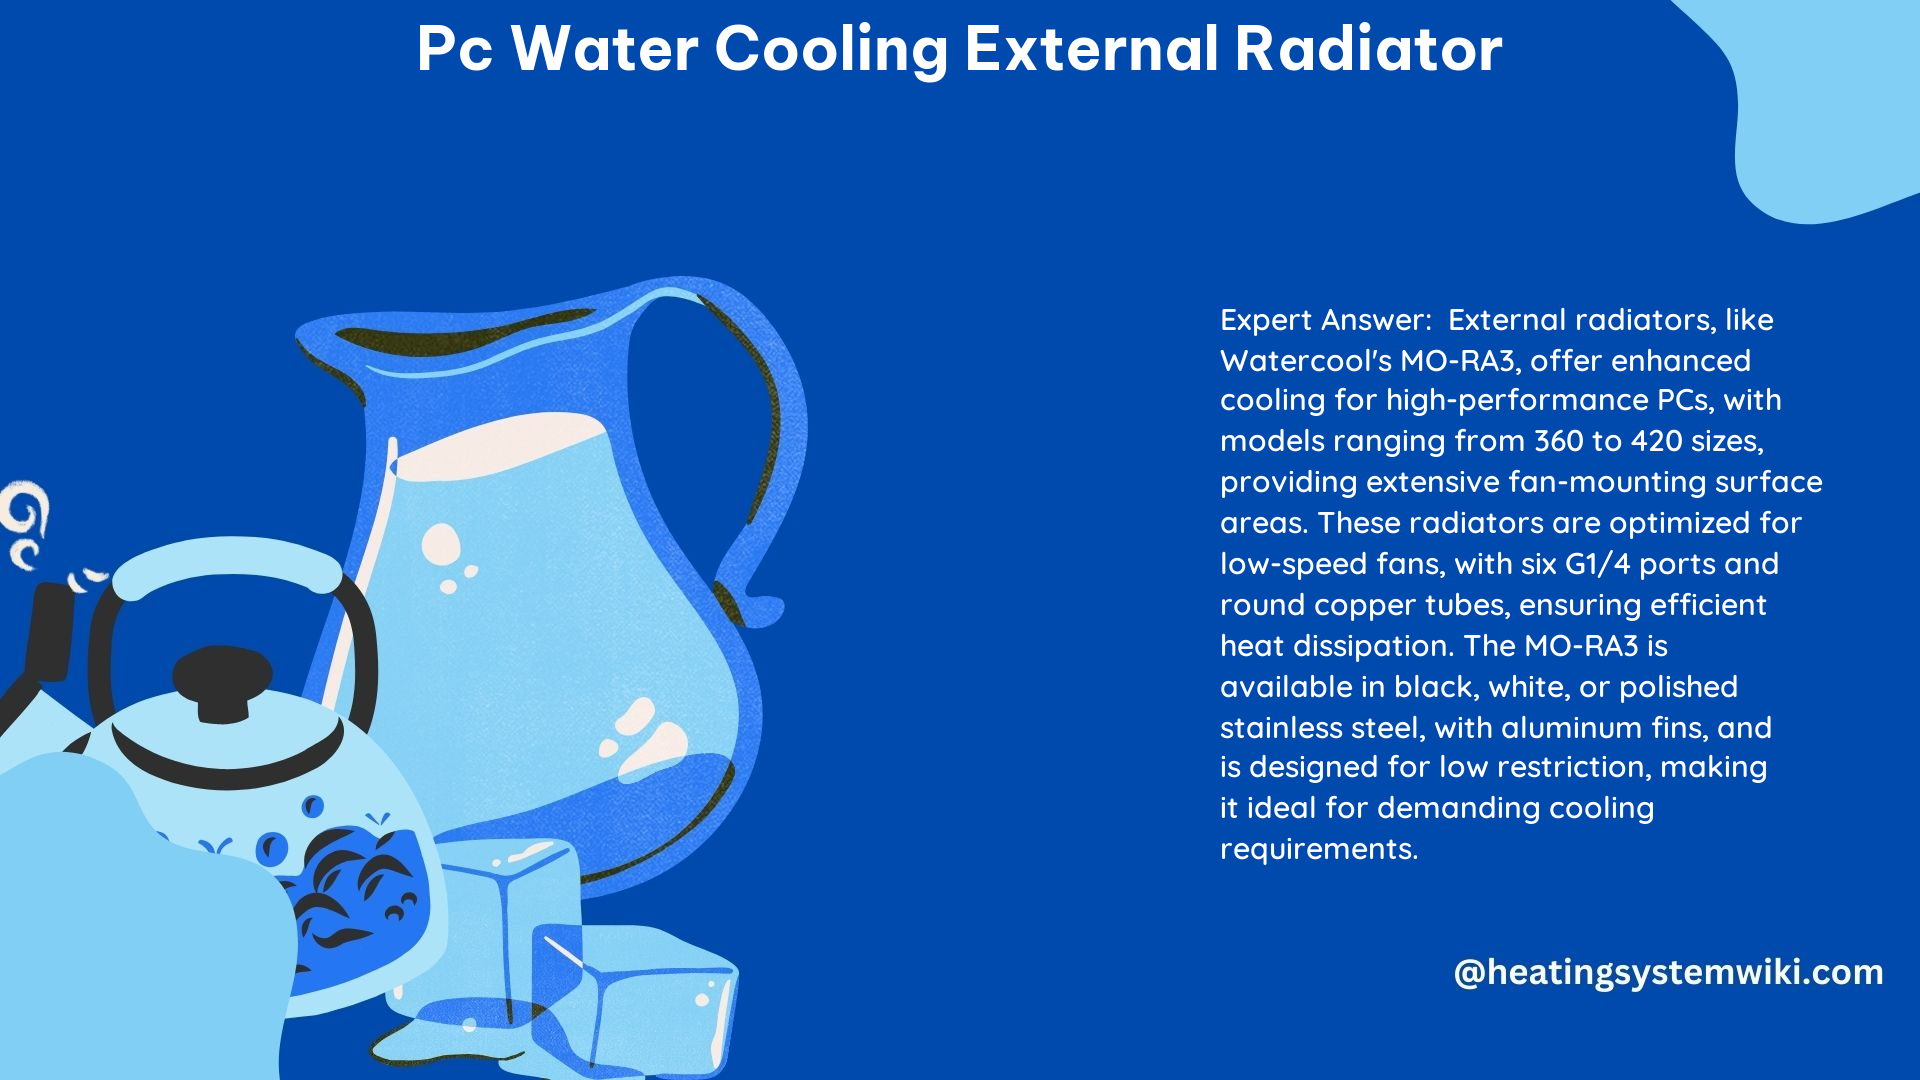 PC Water Cooling External Radiator